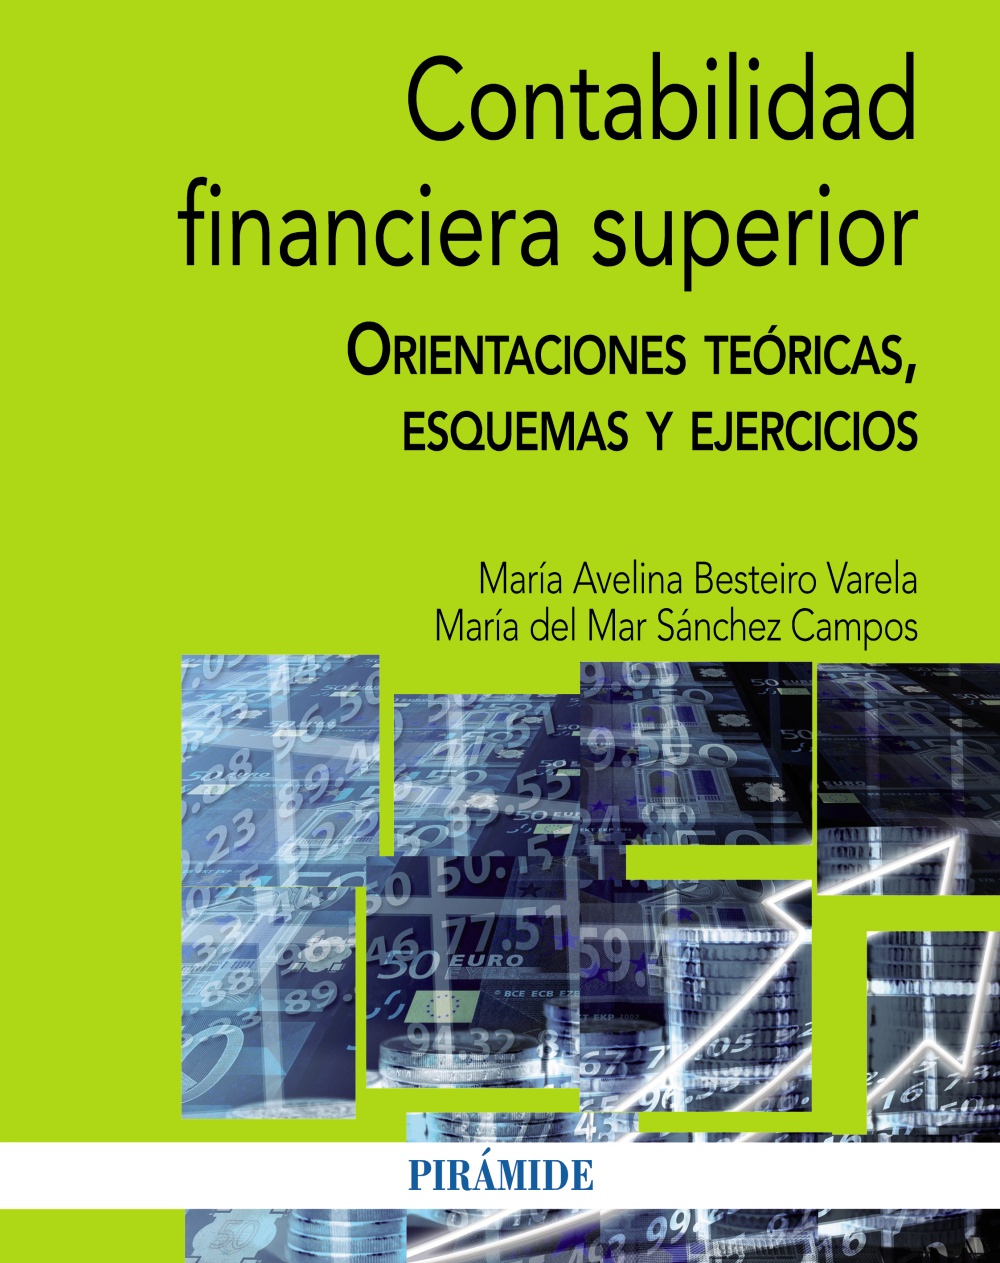 Tristemente Español Bienvenido Contabilidad financiera superior - Hablamos de Libros